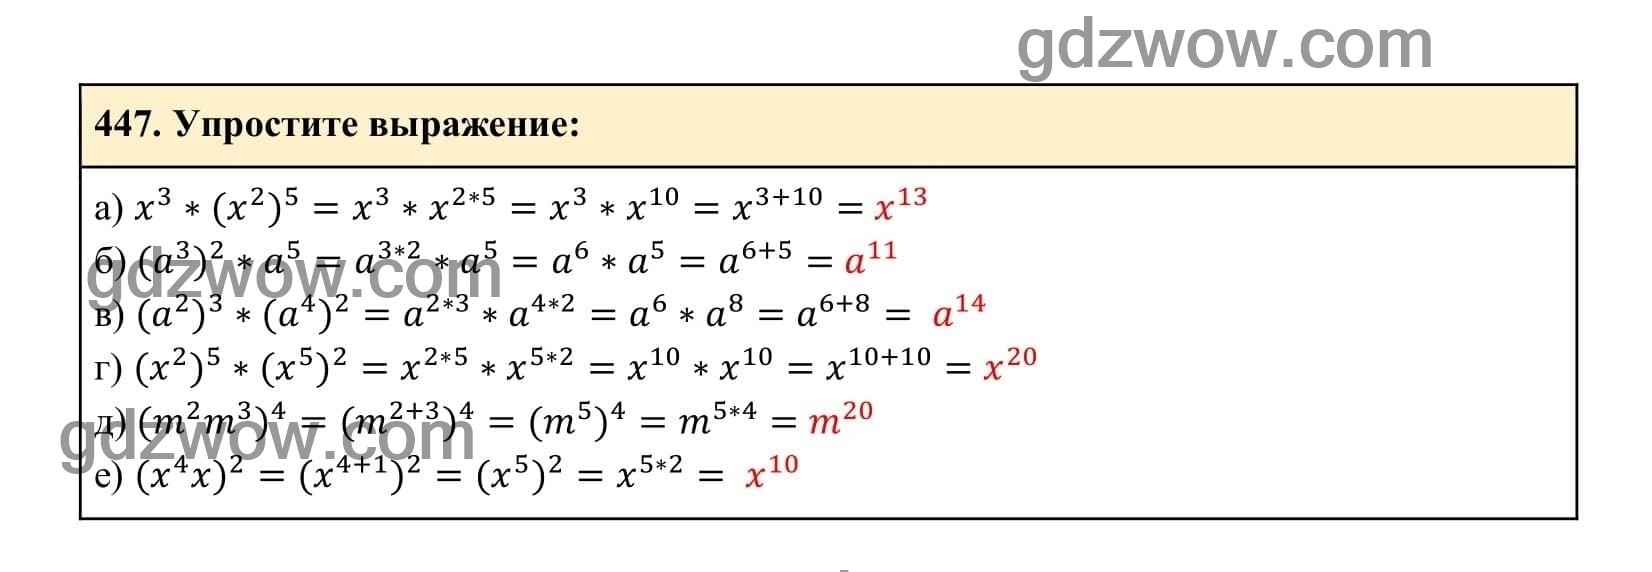 Упражнение 447 - ГДЗ по Алгебре 7 класс Учебник Макарычев (решебник) - GDZwow